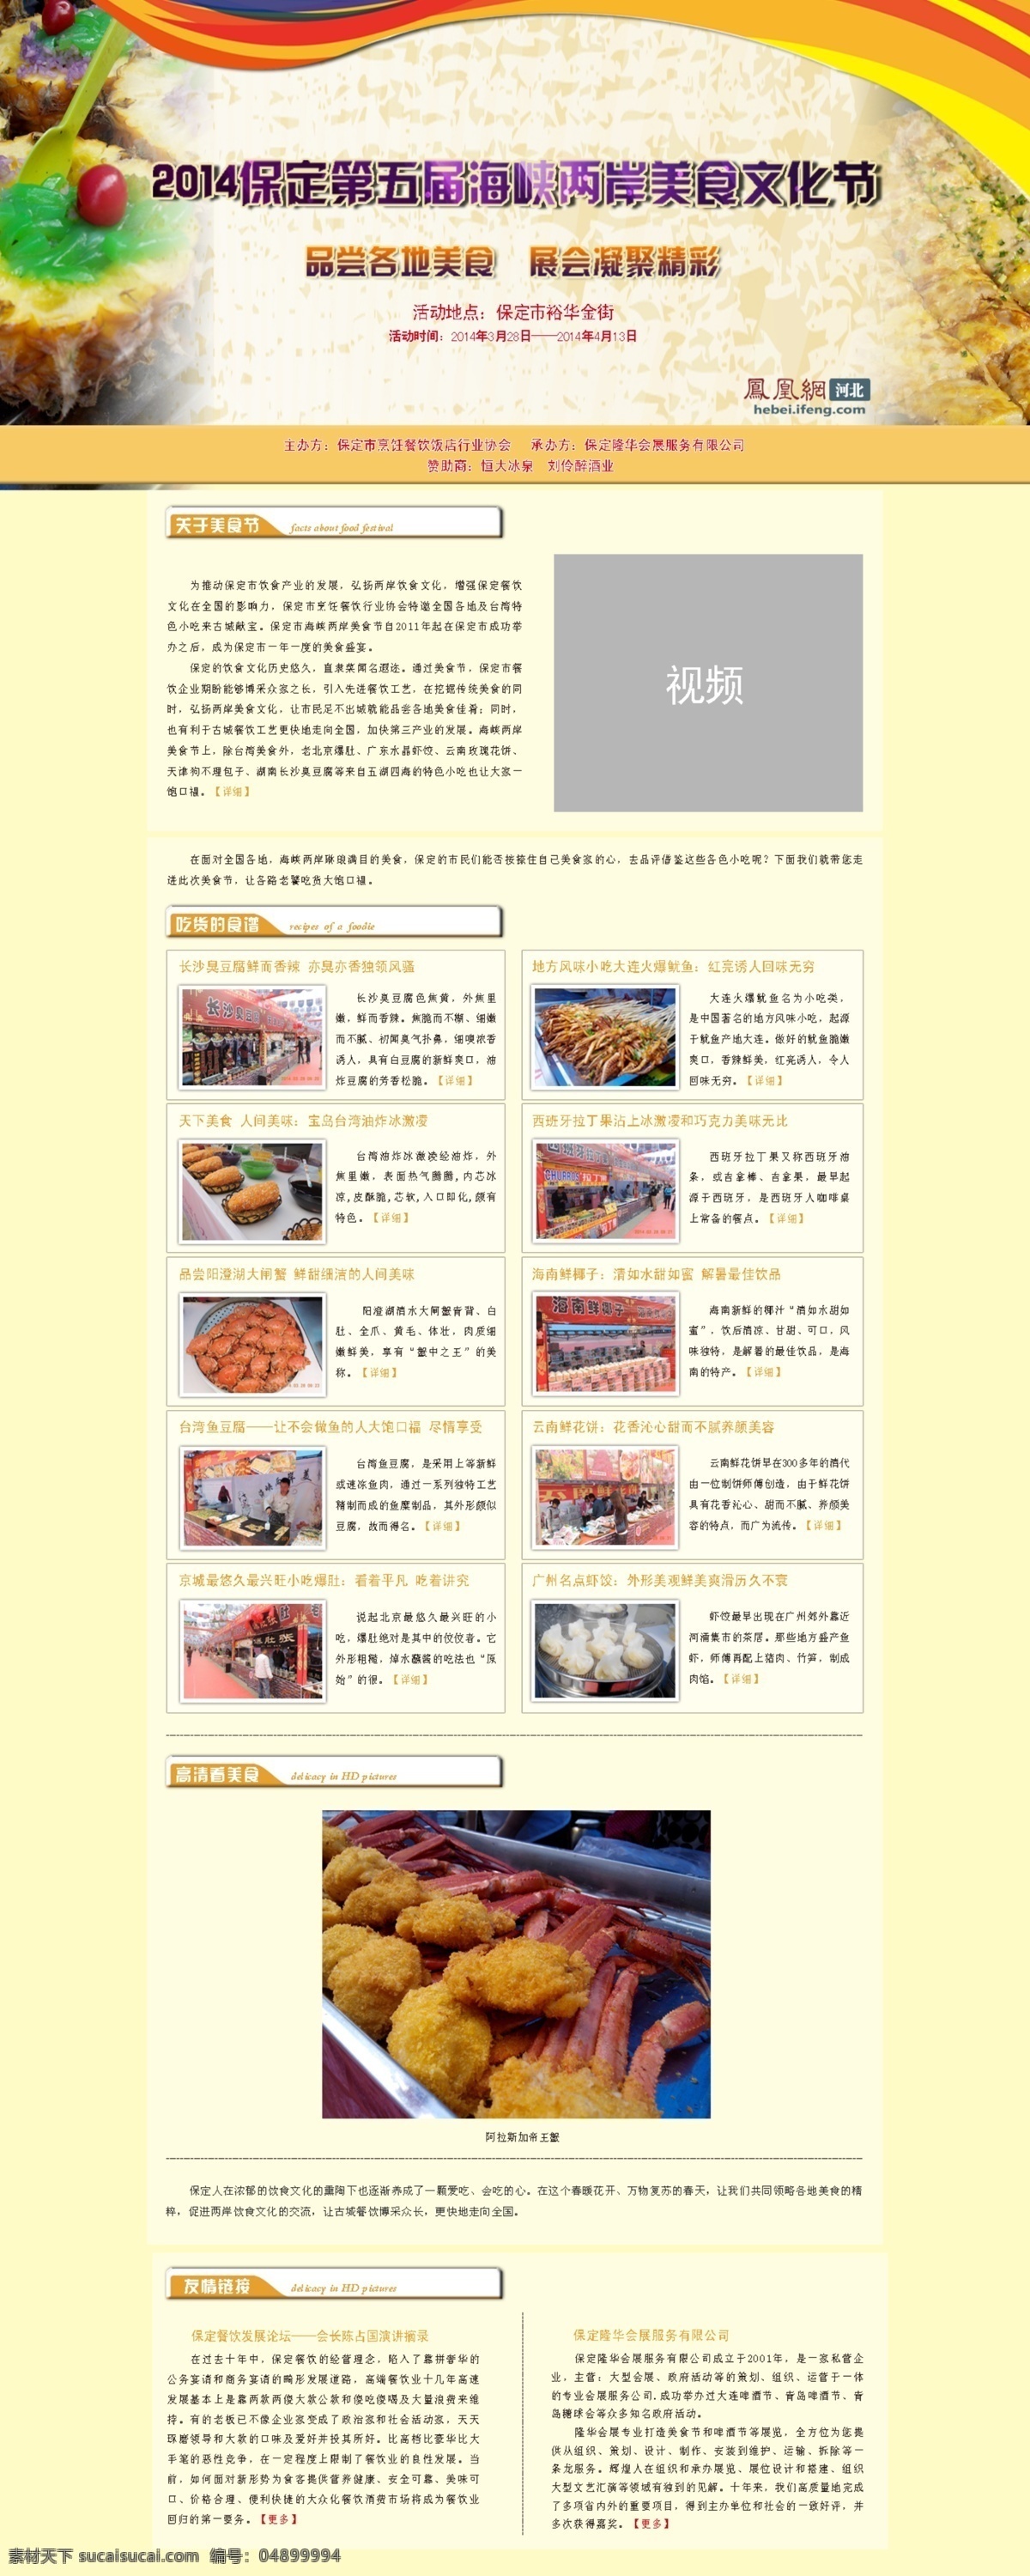 美景 美食 文化节 专题 保定 爱设计 web 界面设计 中文模板